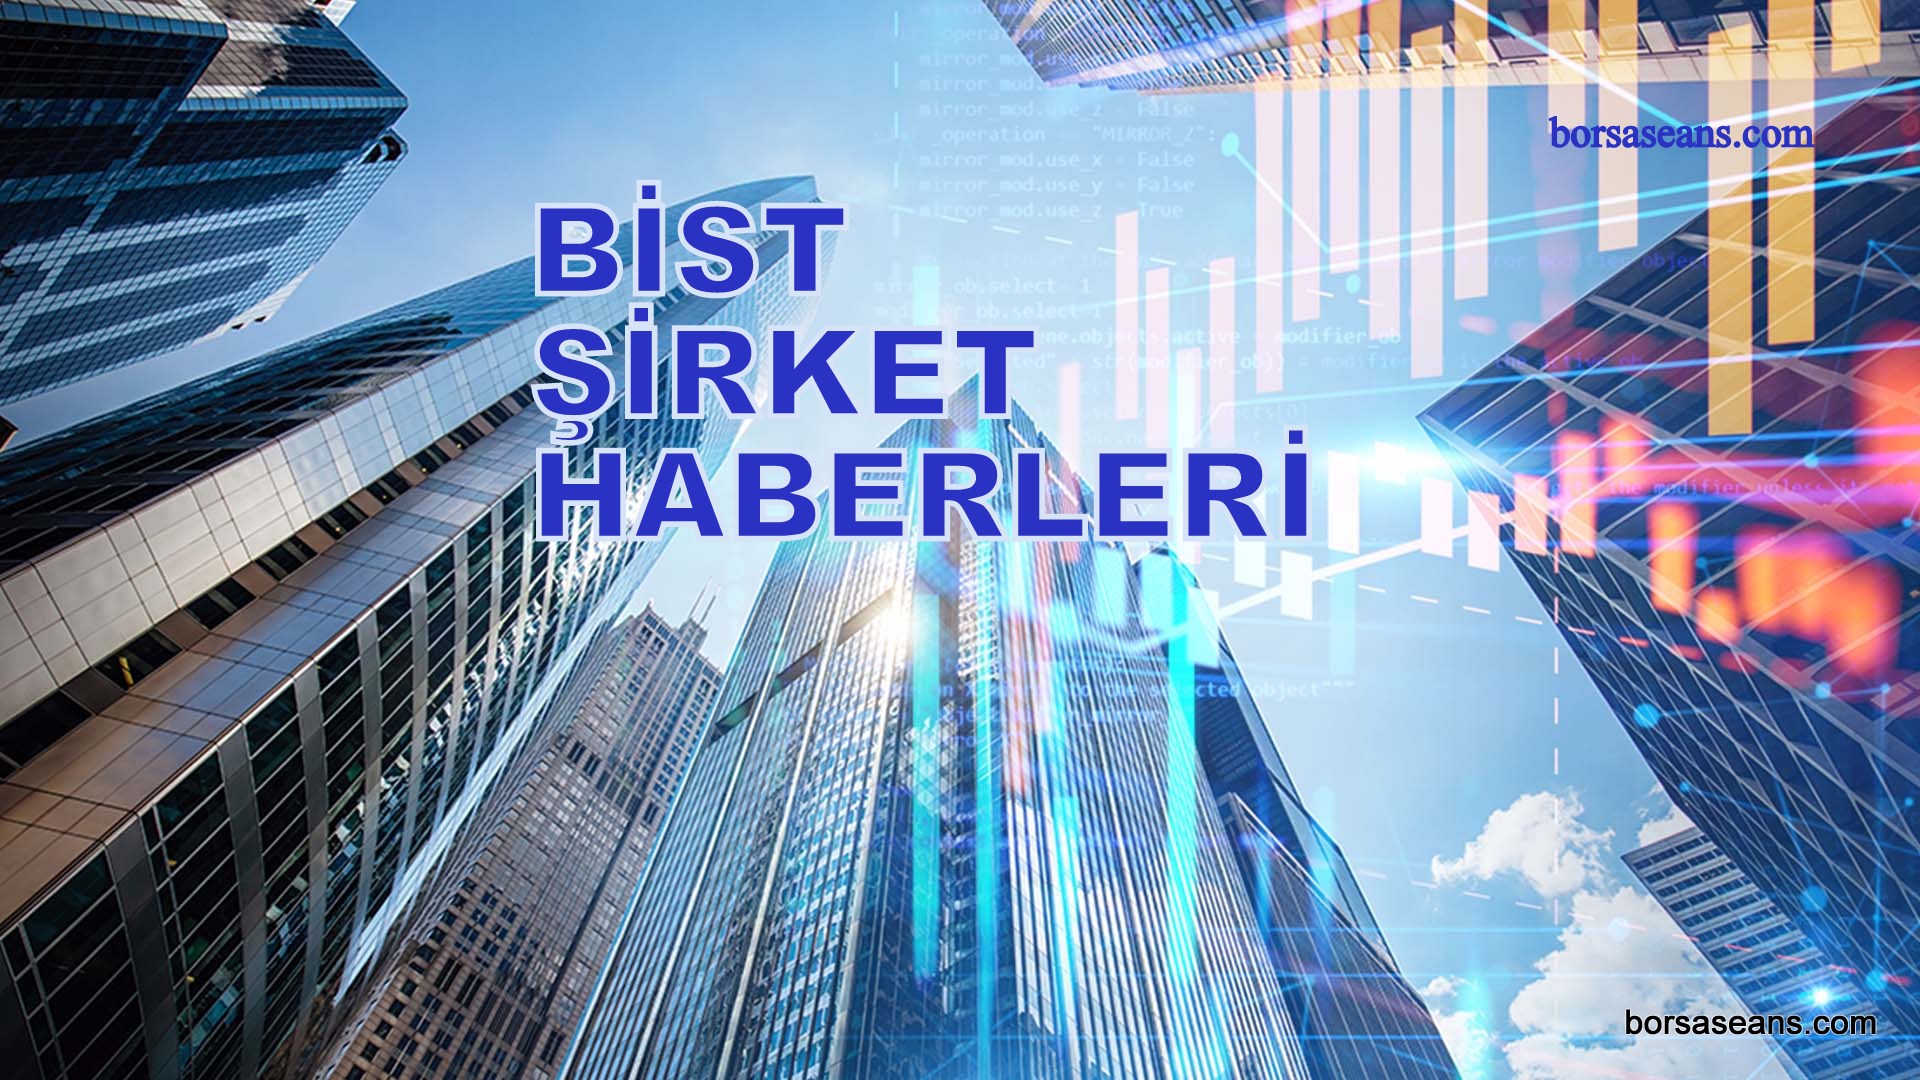 Borsa İstanbul,BİST 100,Endeks,Şirket,Sermaye,Haber,SPK,KAP,VBTS,SASA,TUKAS,DERHL